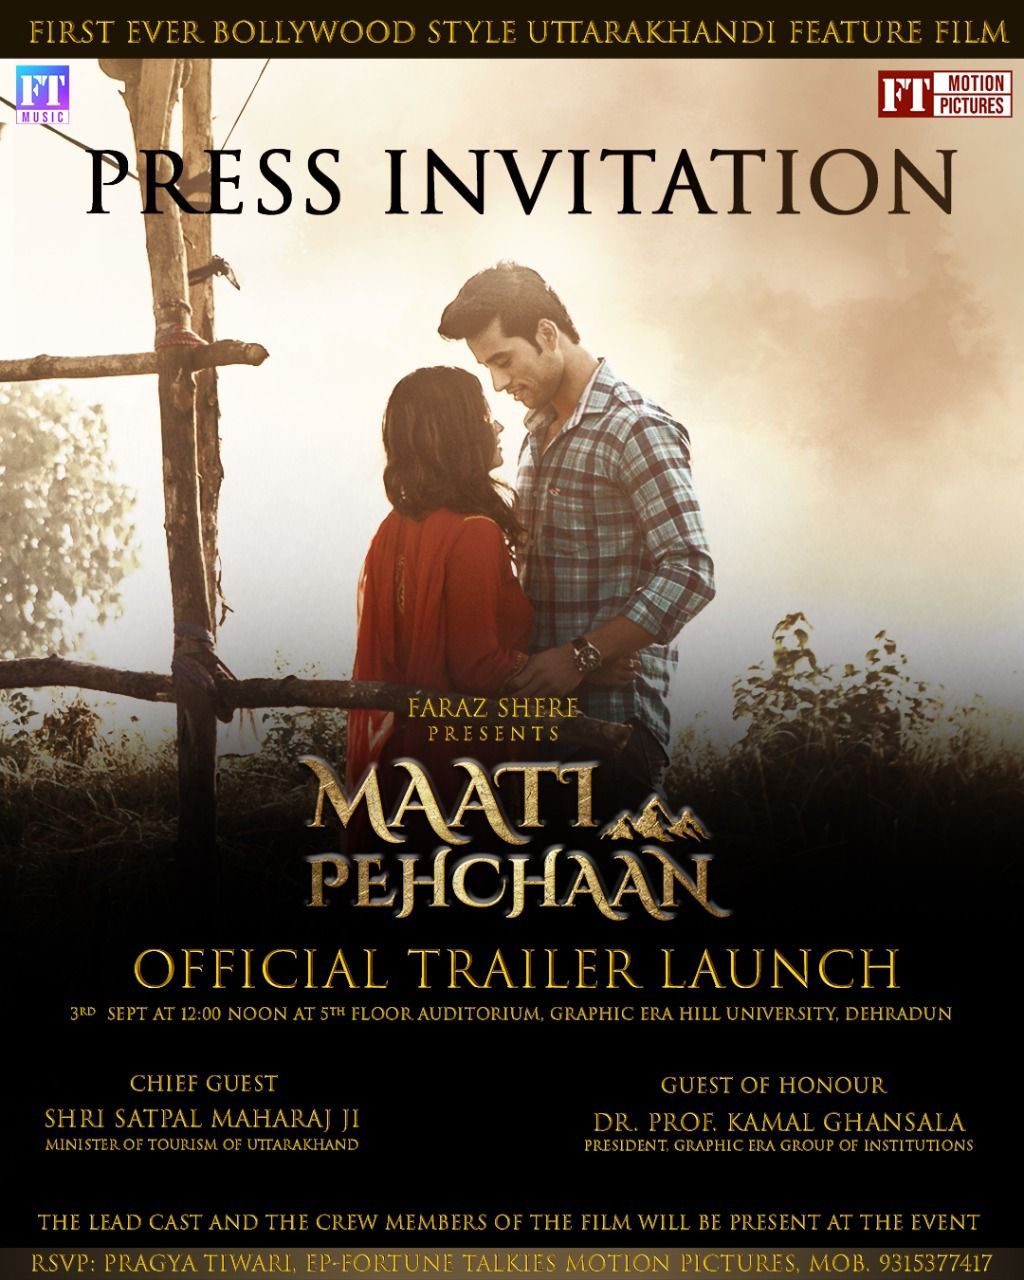 कल 3 सितंबर को देहरादून में होगा फीचर फिल्म “माटी पहचान” का आधिकारिक ट्रेलर लॉन्च